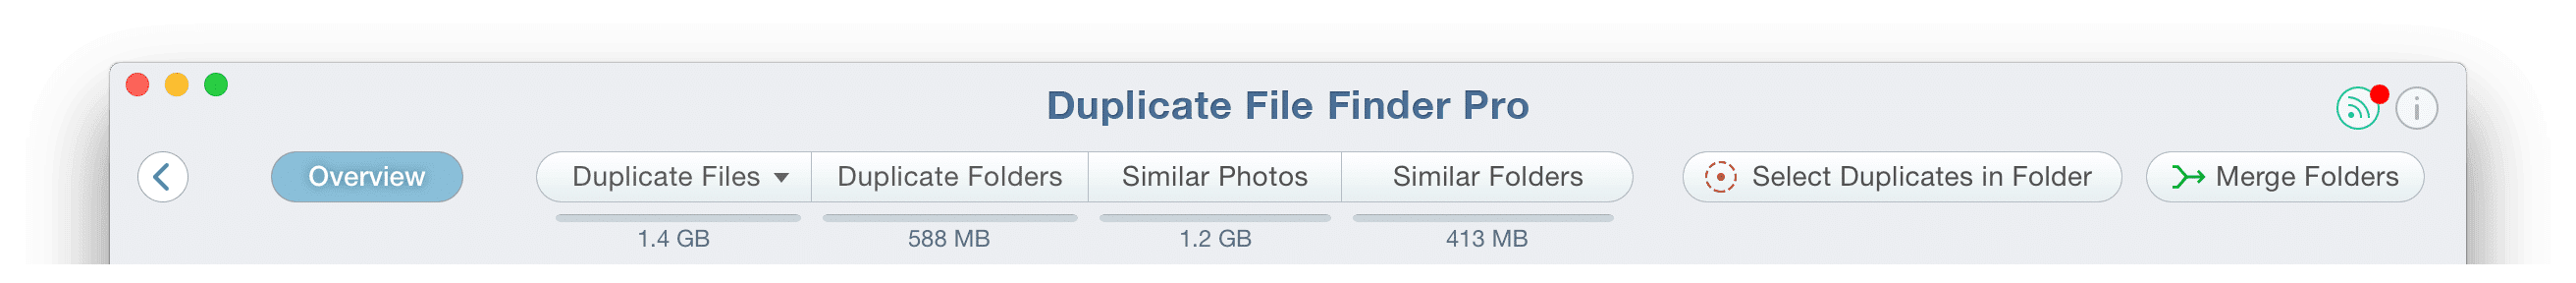 Top Menu tabs of Duplicate File Finder